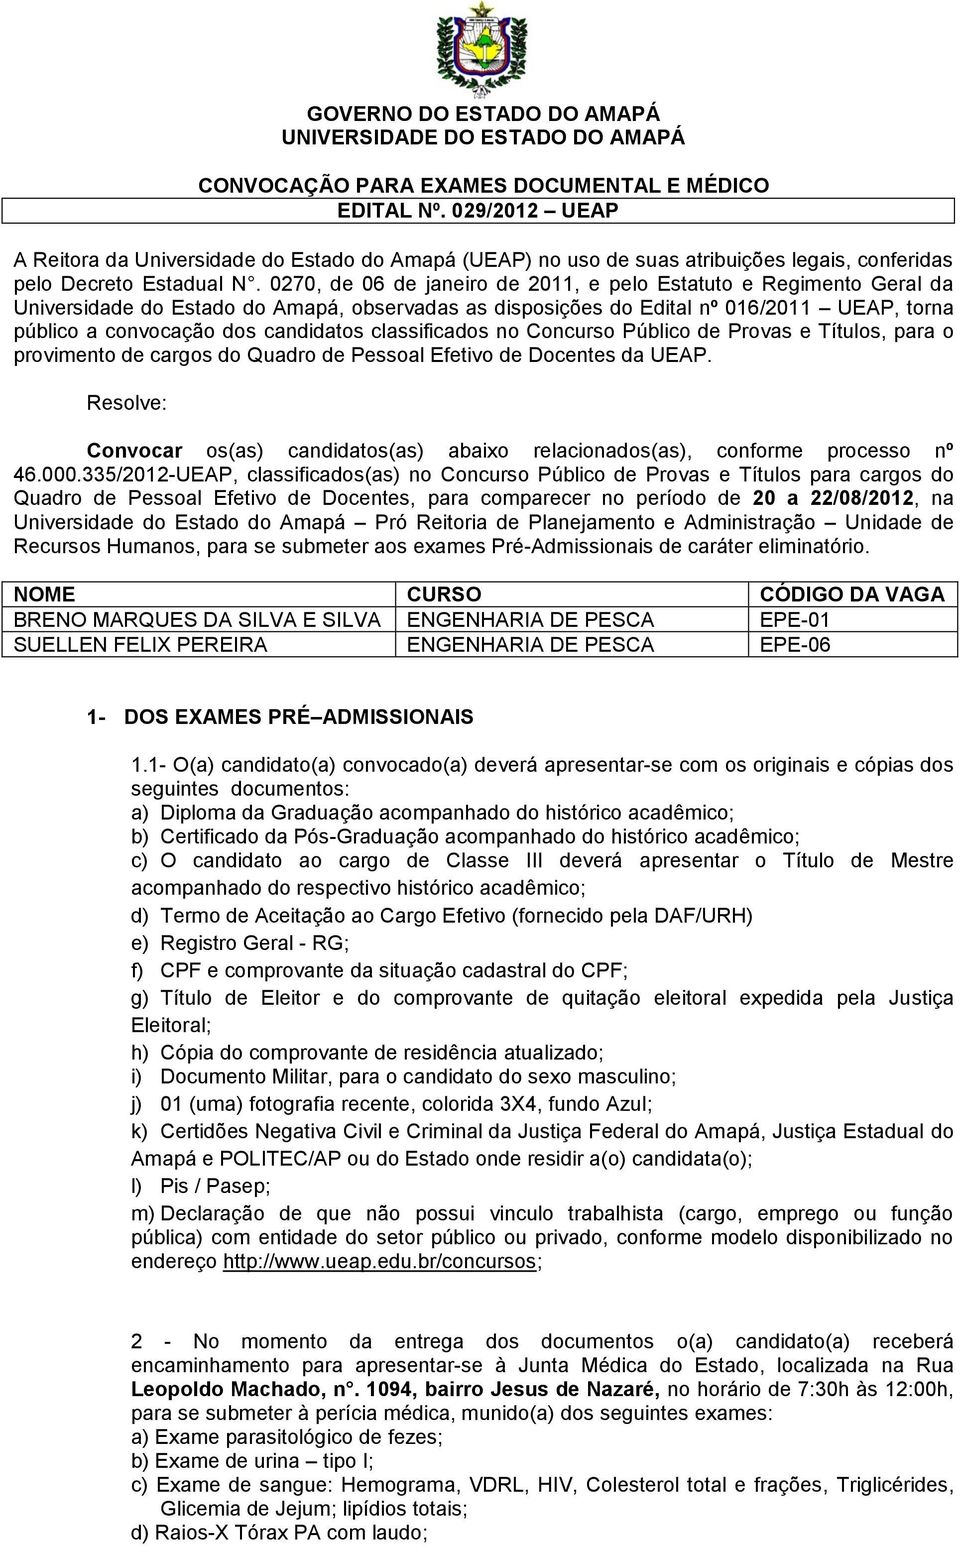 0270, de 06 de janeiro de 2011, e pelo Estatuto e Regimento Geral da Universidade do Estado do Amapá, observadas as disposições do Edital nº 016/2011 UEAP, torna público a convocação dos candidatos